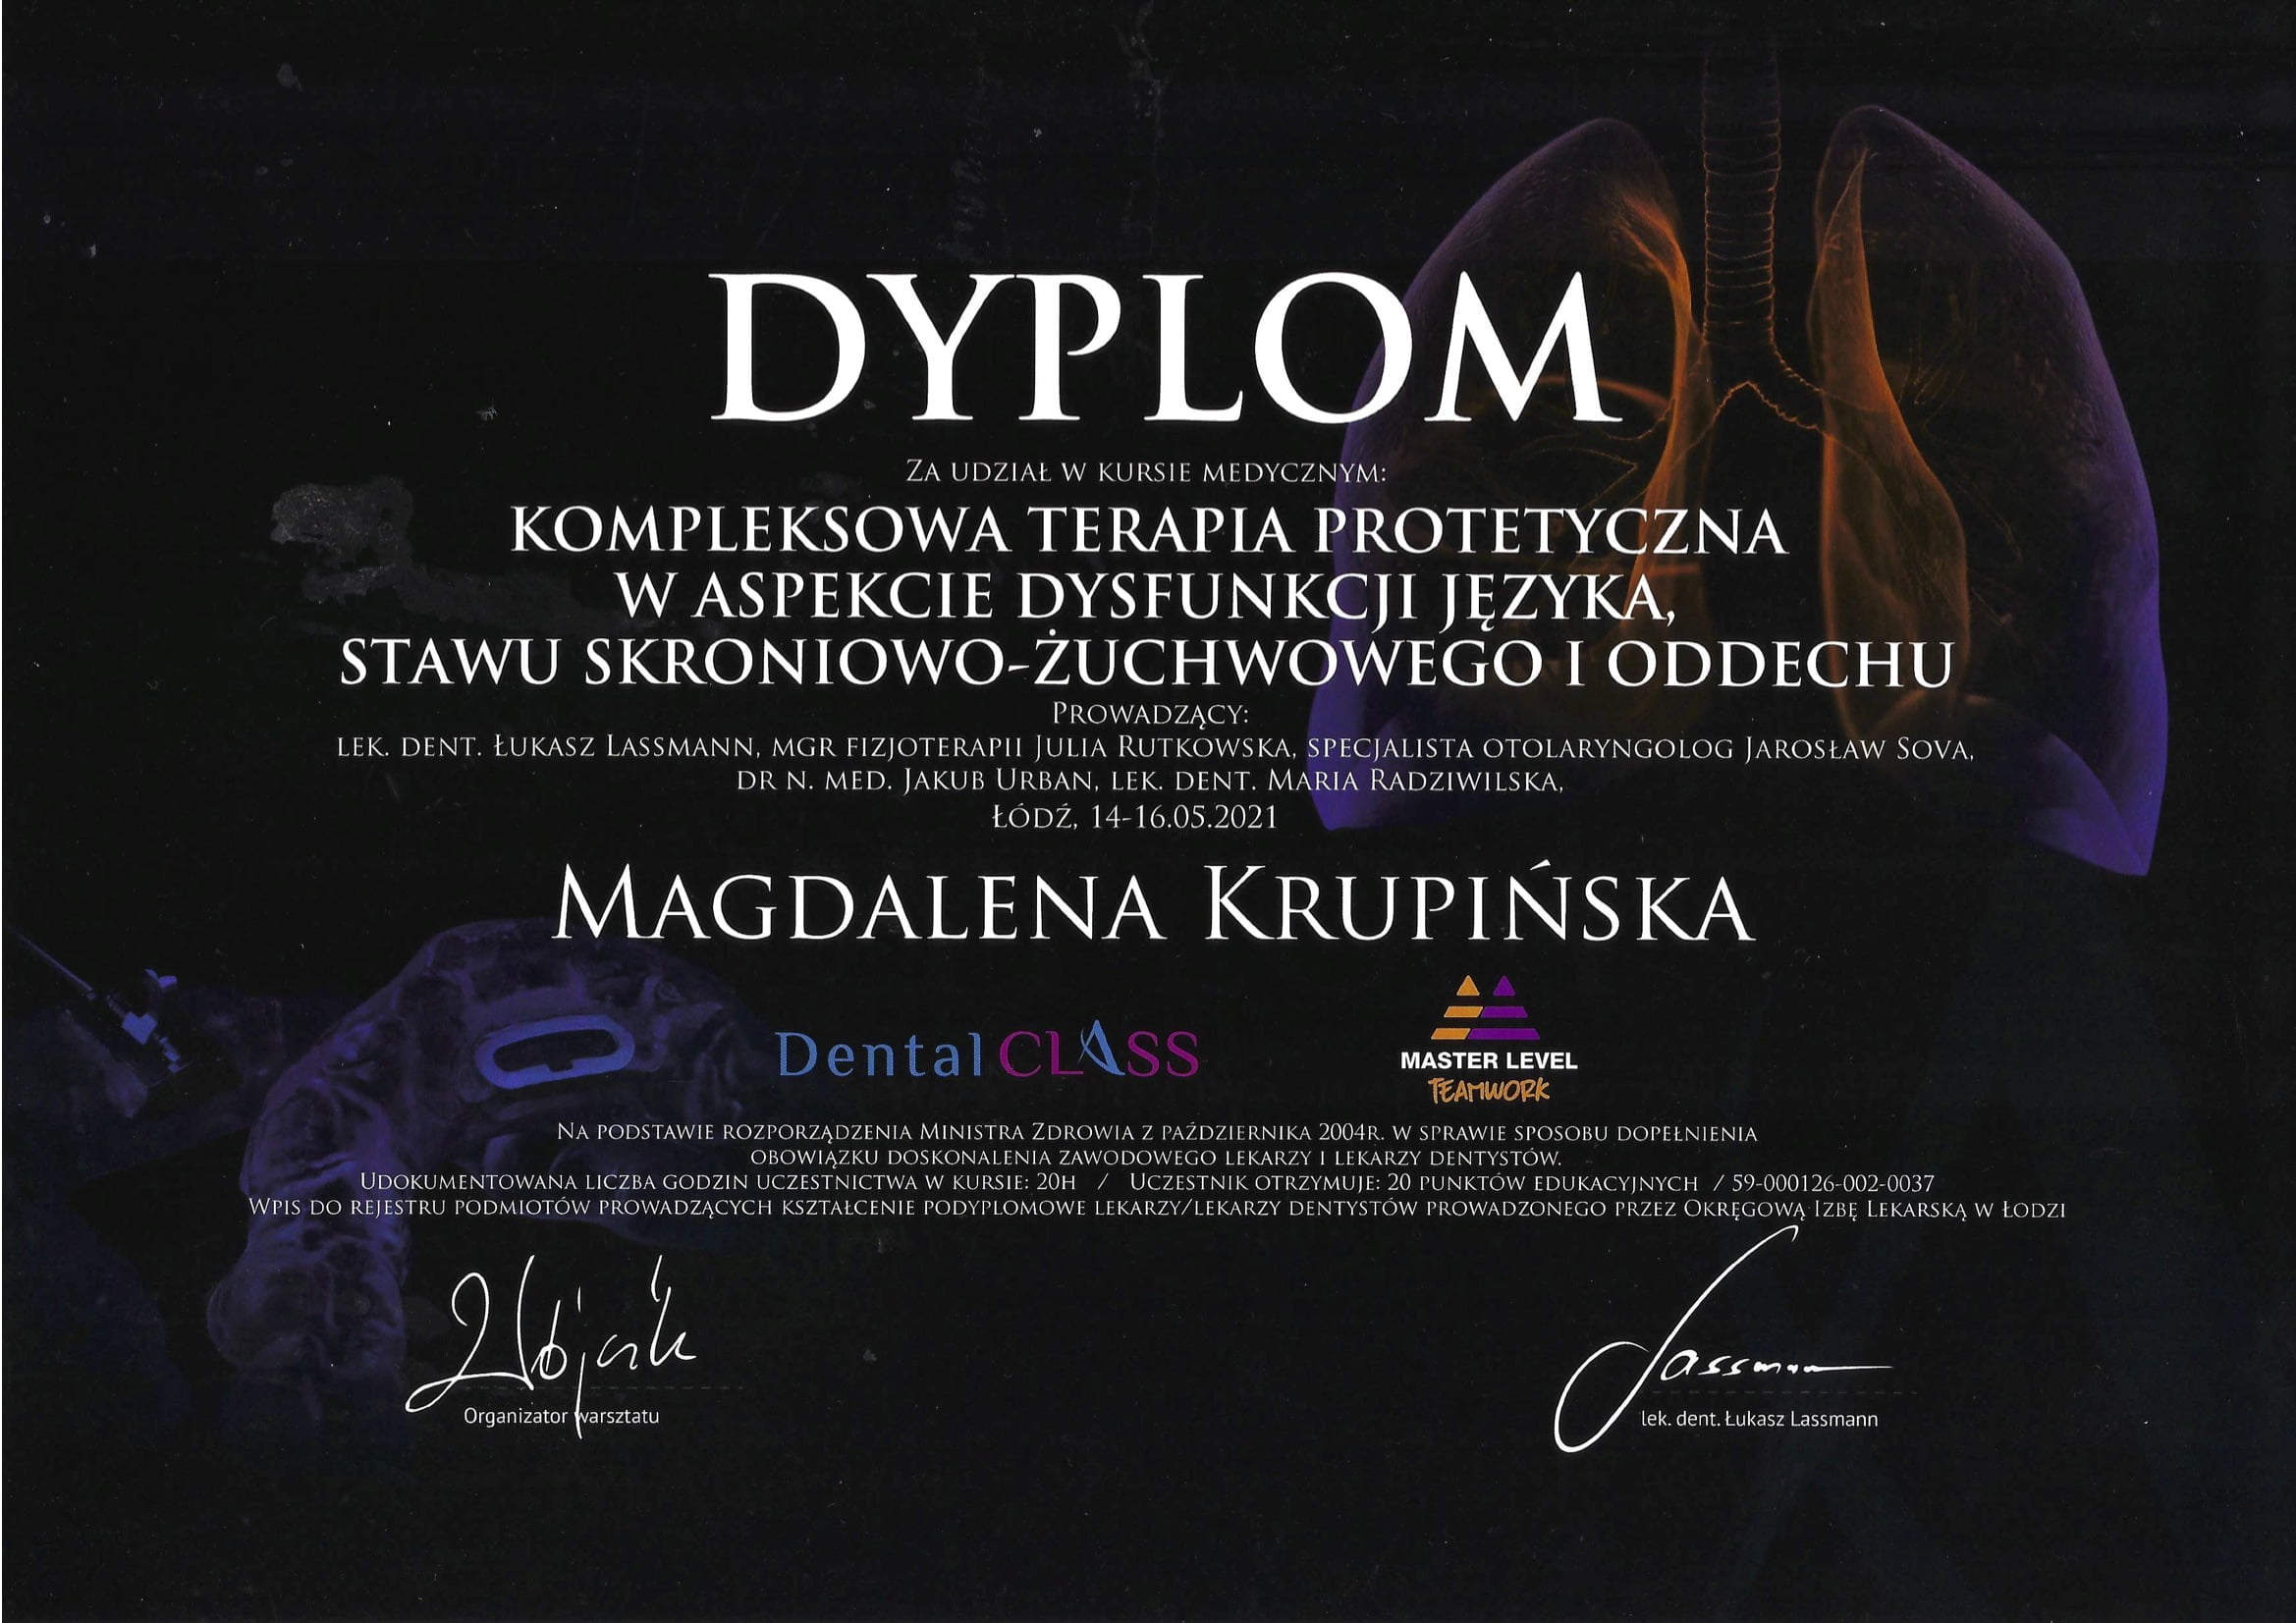 Magdalena Krupińska certyfikat 26